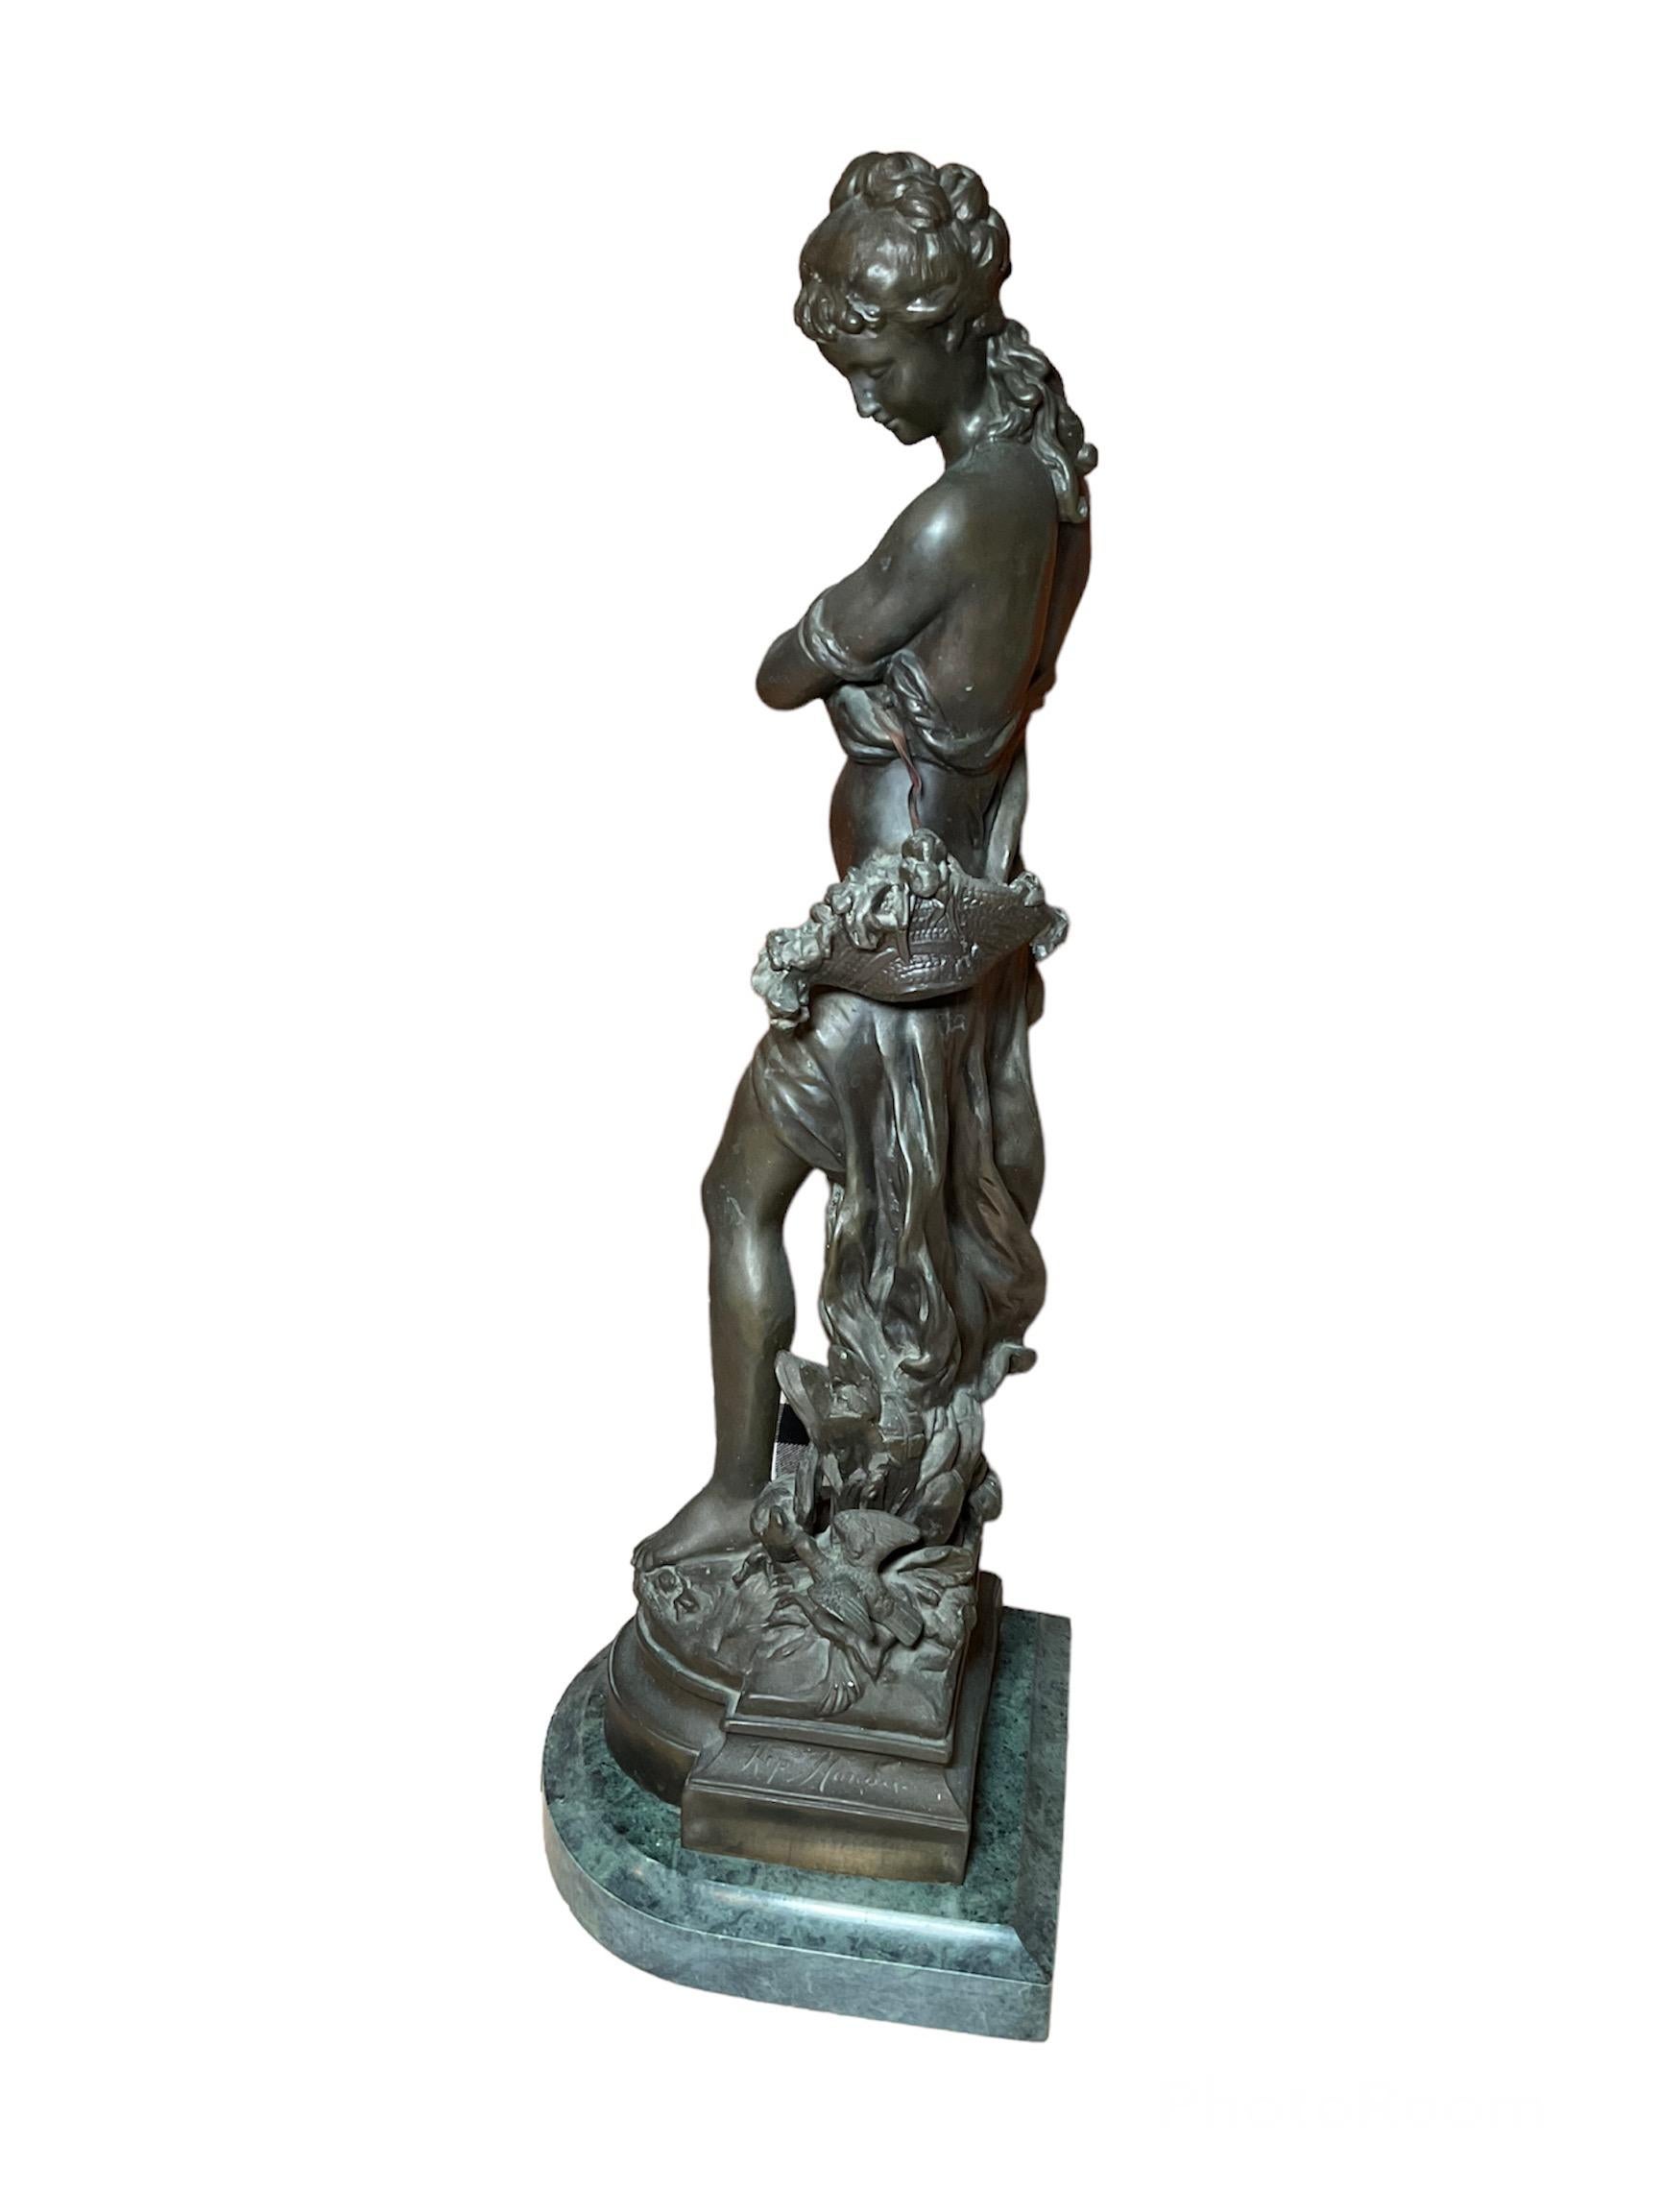 Il s'agit d'une sculpture en bronze d'Hippolyte F. Moreau, intitulée Jeune fille au blé. Il est célèbre pour ses statues en bronze de jeunes femmes. Il est également le fils d'un autre sculpteur français de renom, Jean Baptiste Moreau. Elle